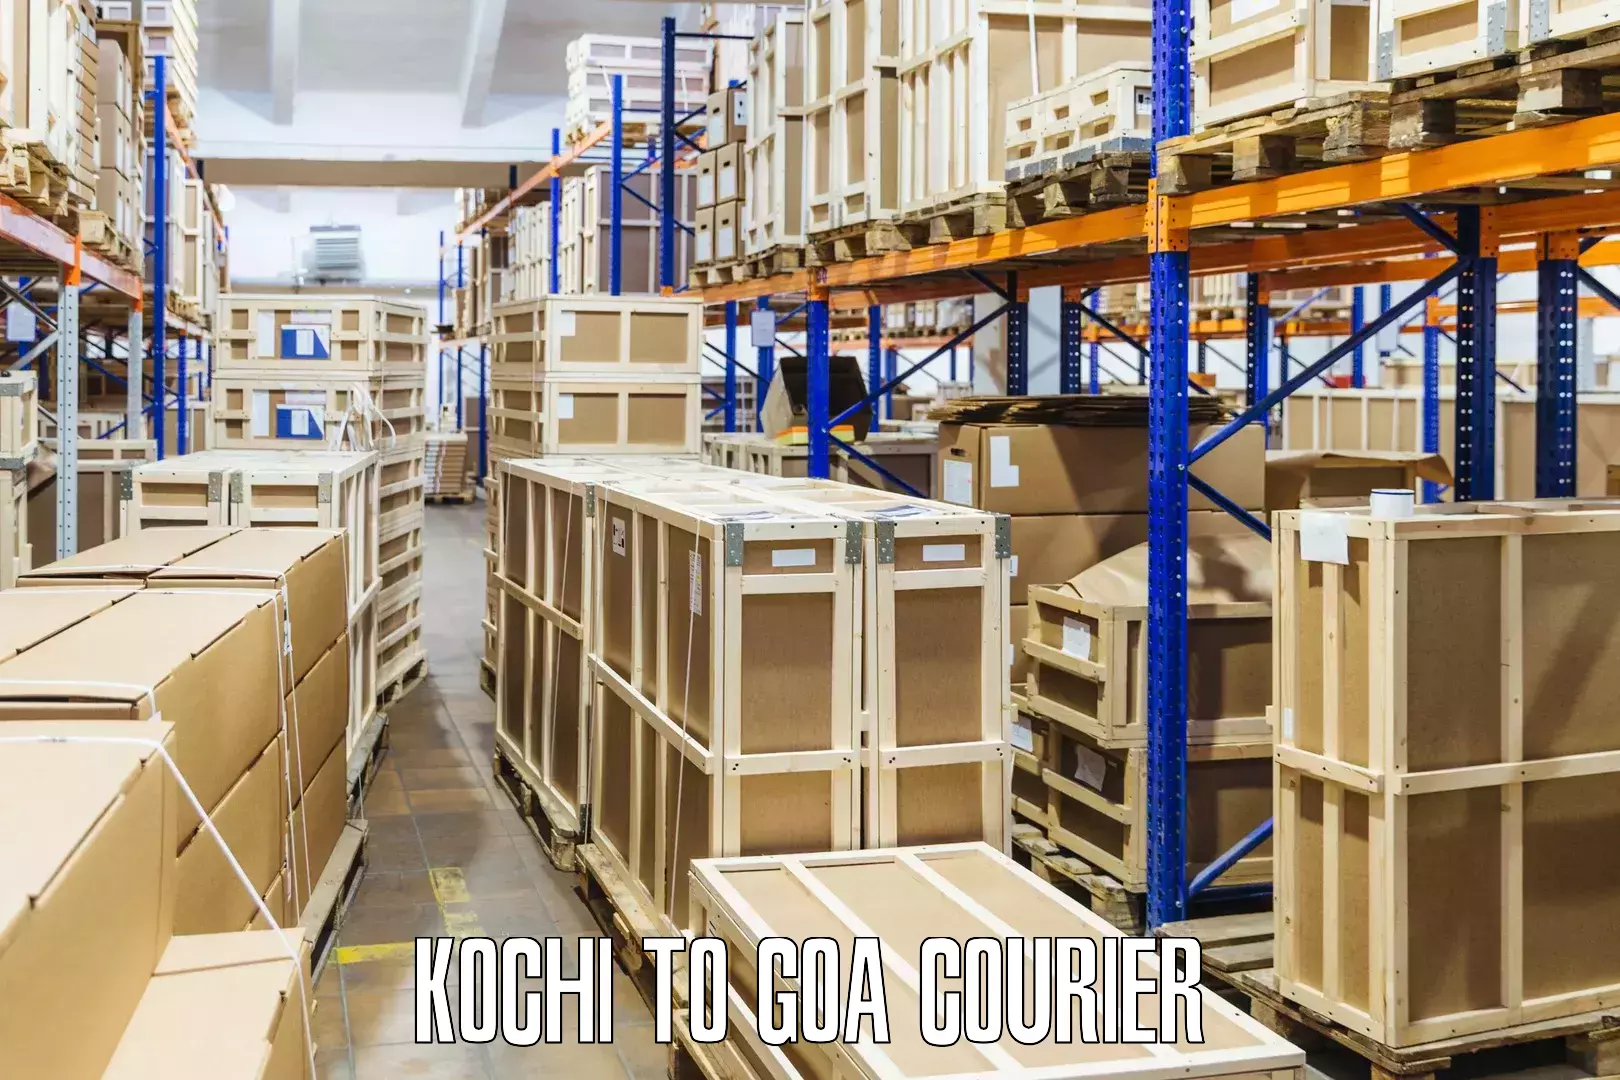 Fast shipping solutions Kochi to Canacona